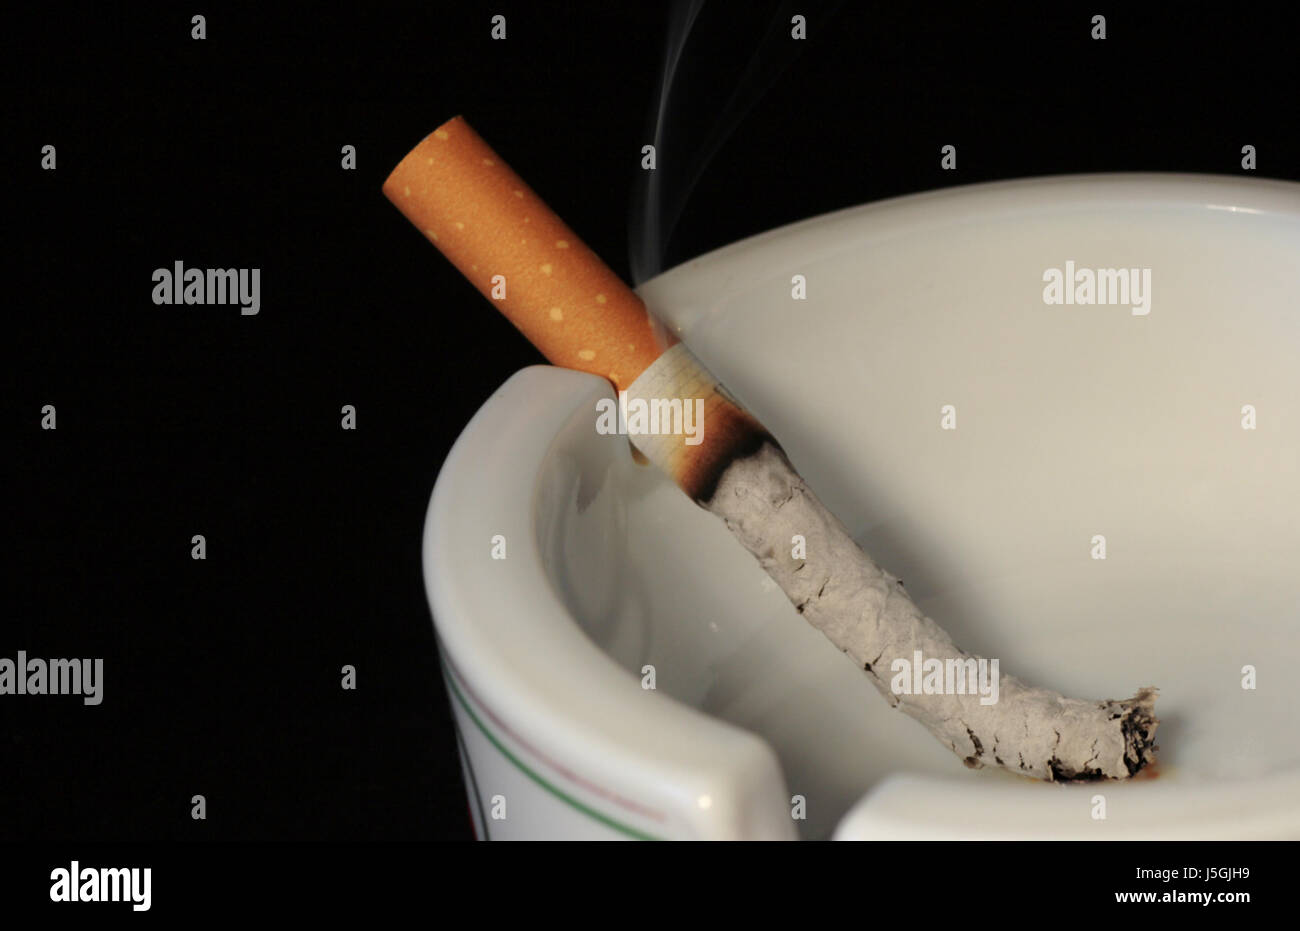 smoke smoking smokes fume cigarette health ash tobacco welfare cancer Stock Photo